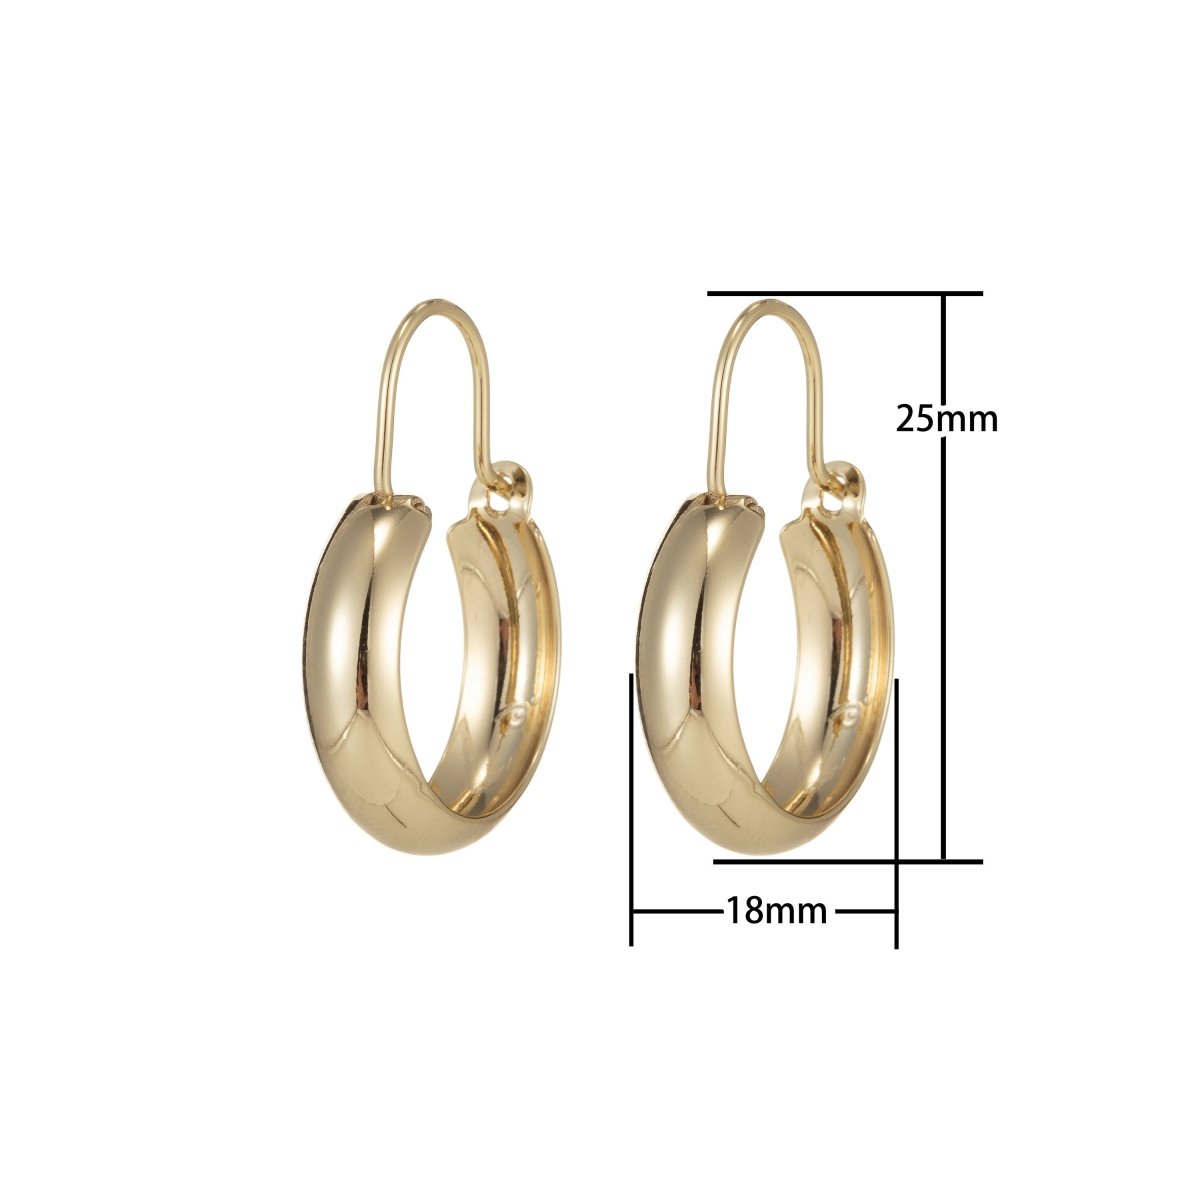 Gold Hoop Earrings, Small Hoop Earrings, Medium Minimal Hoop Earrings, Dainty Hoop Earrings, Thick 14k Gold Filled Hoop Earrings Q-072 - DLUXCA